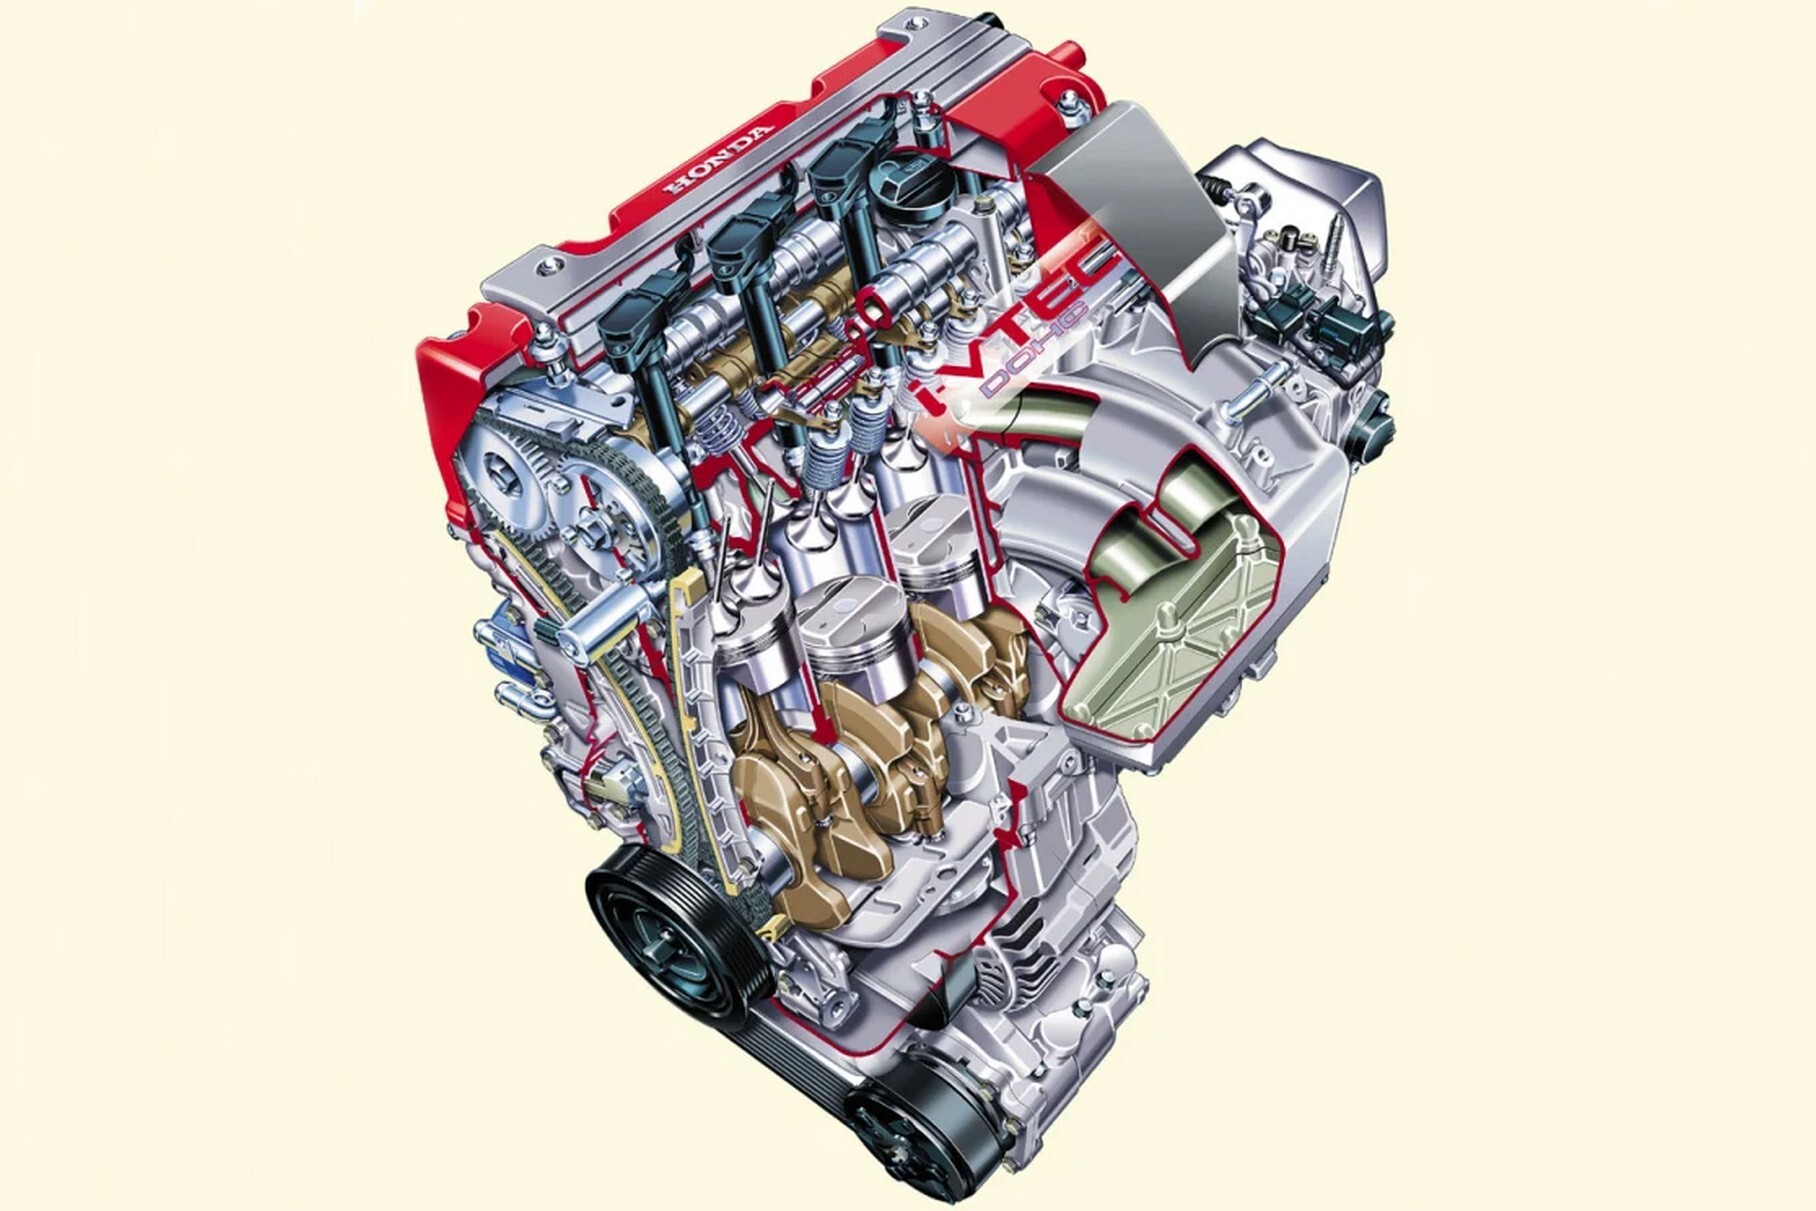 Популярное решение при тюнинге — совместить большеобъёмный «низ» от мотора K24 с «мощностной» головкой K20.